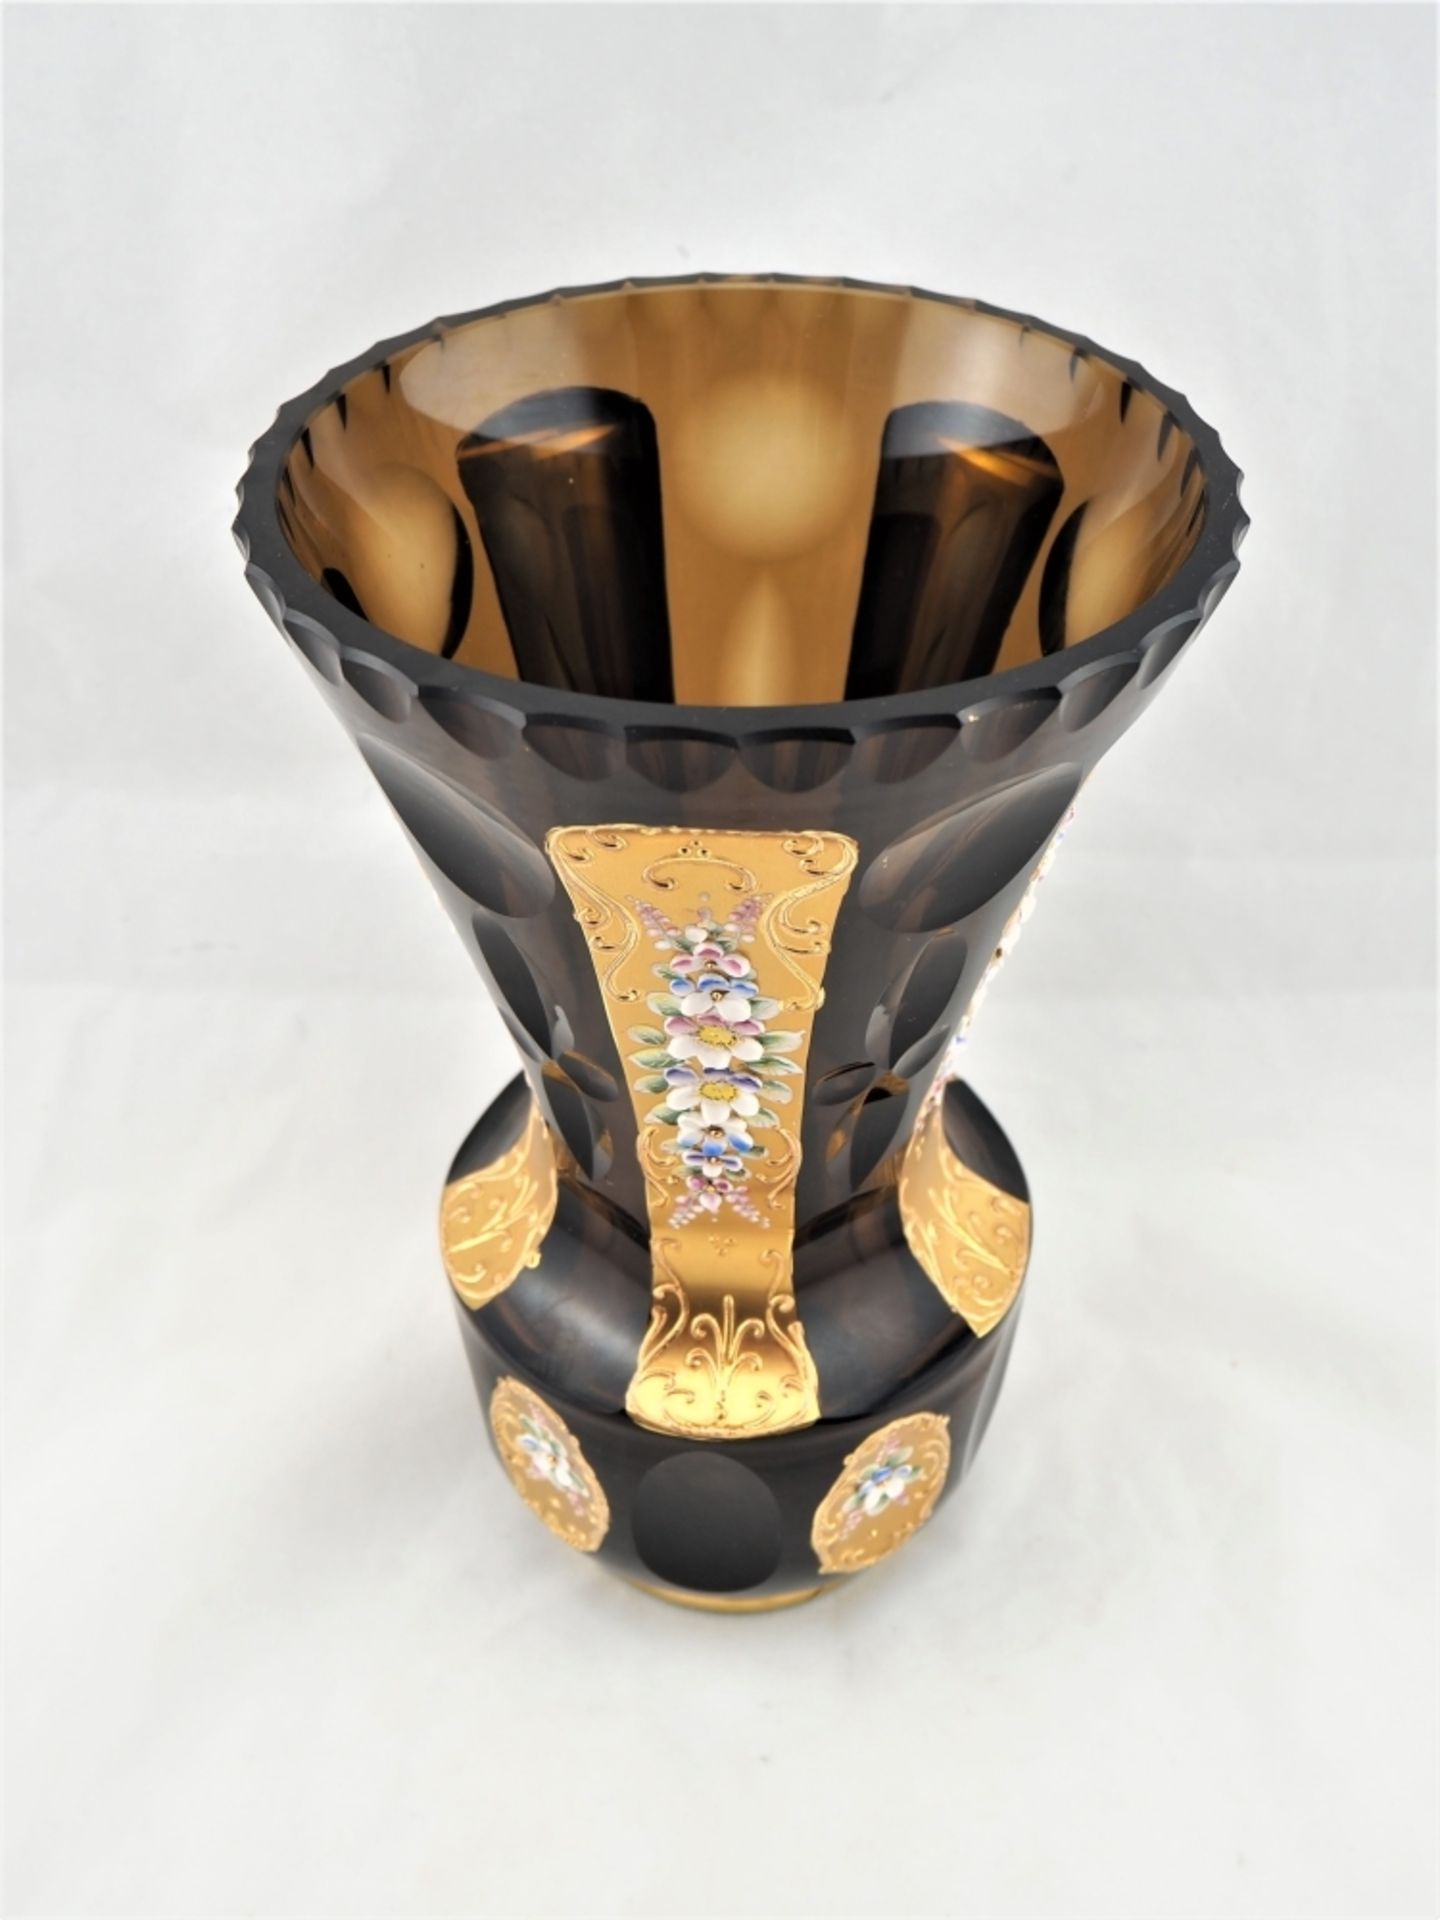 Vase, geschliffen, mit reicher Emailleverzierungaus braunem Glas, mit aufwändigem Schlif - Bild 2 aus 4